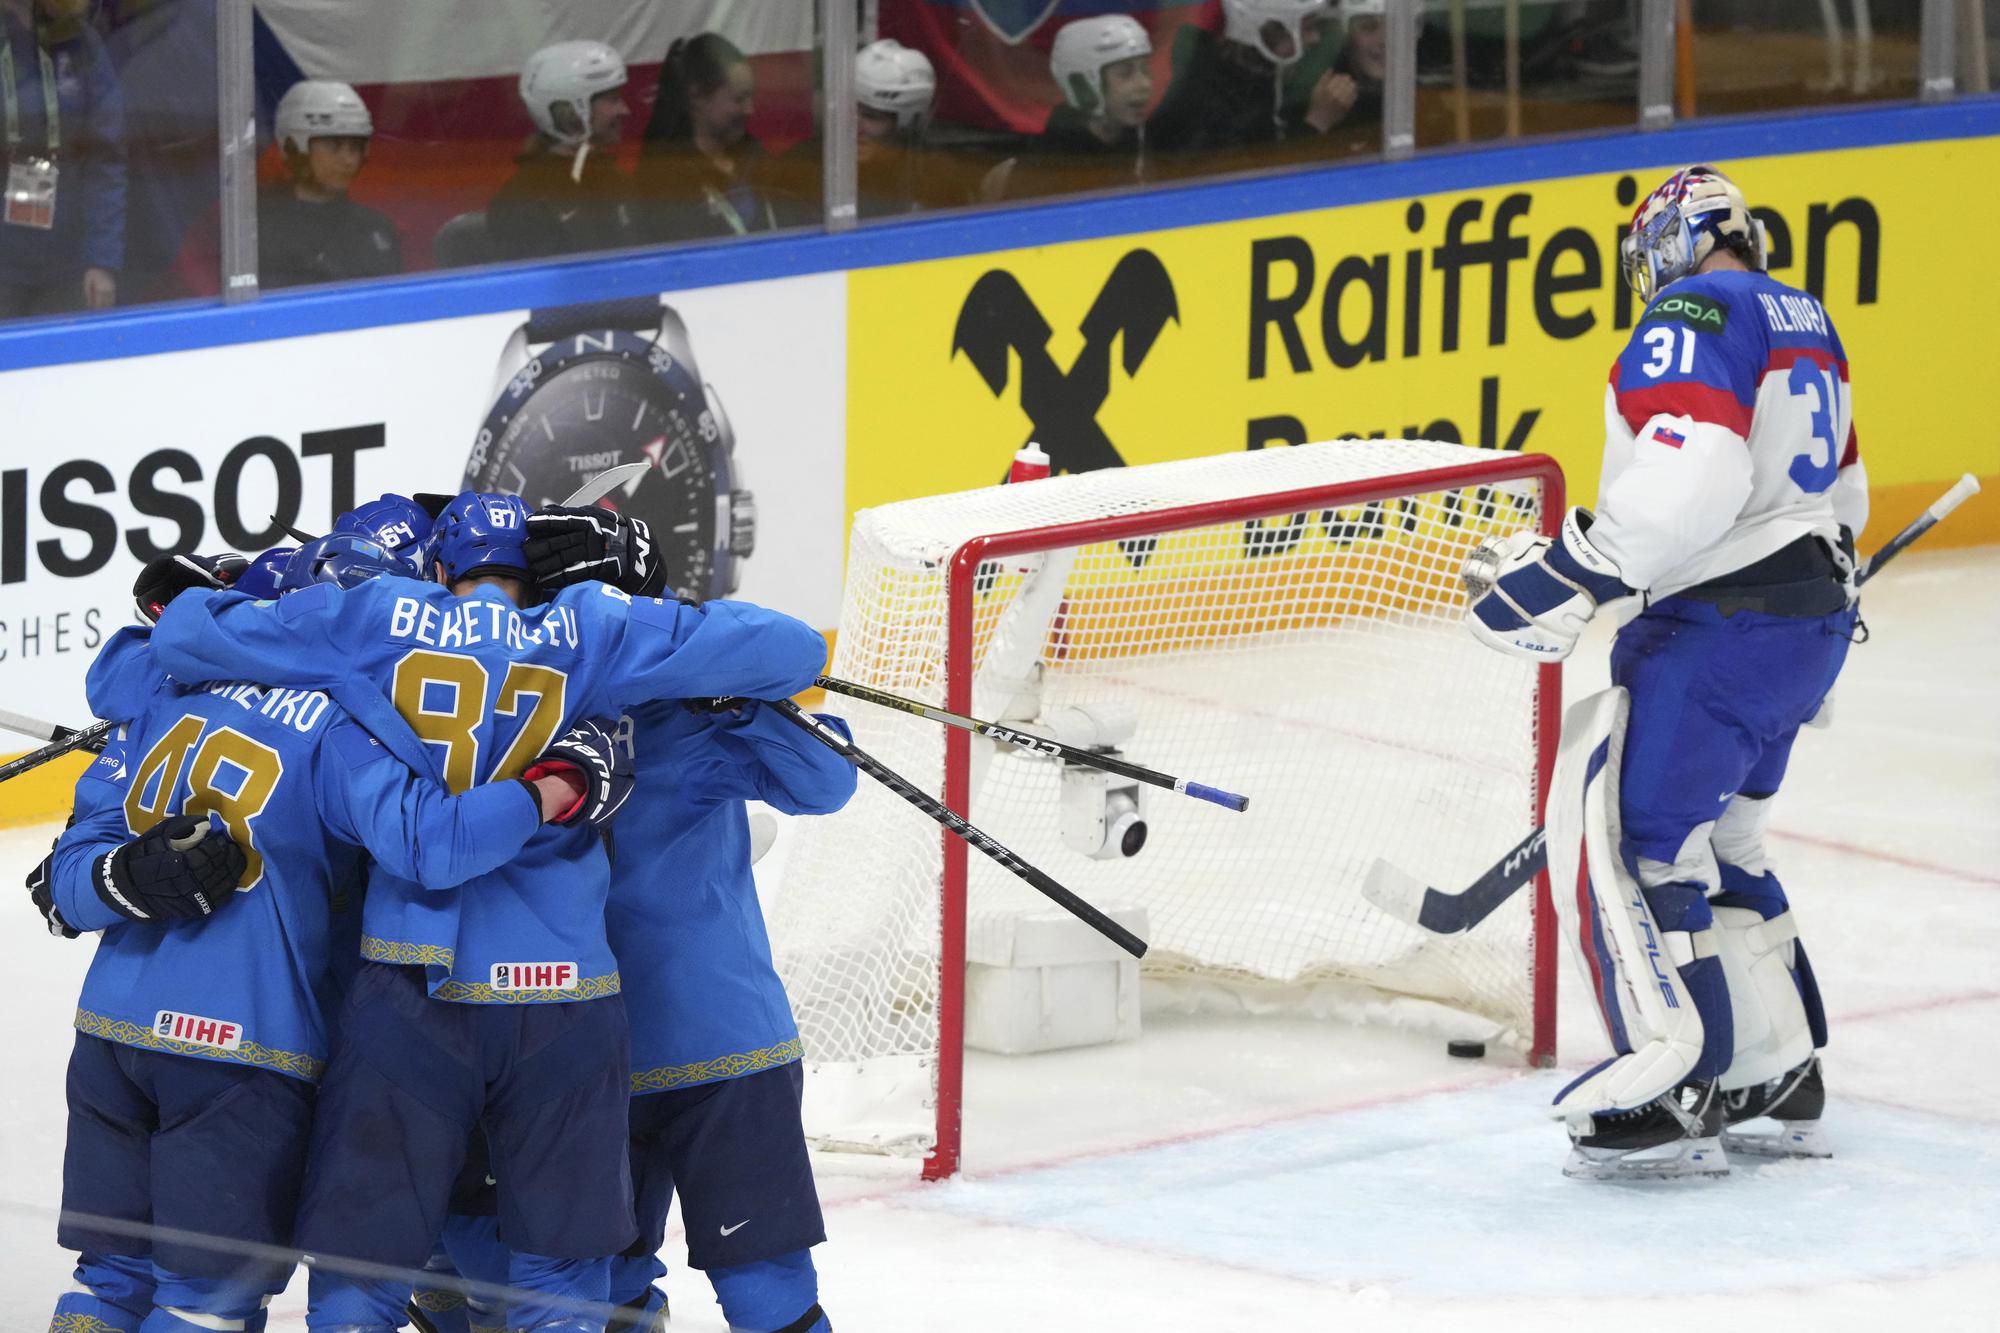 MS v hokeji 2023: Kazachstan - Slovensko (gólová radosť Kazachov)